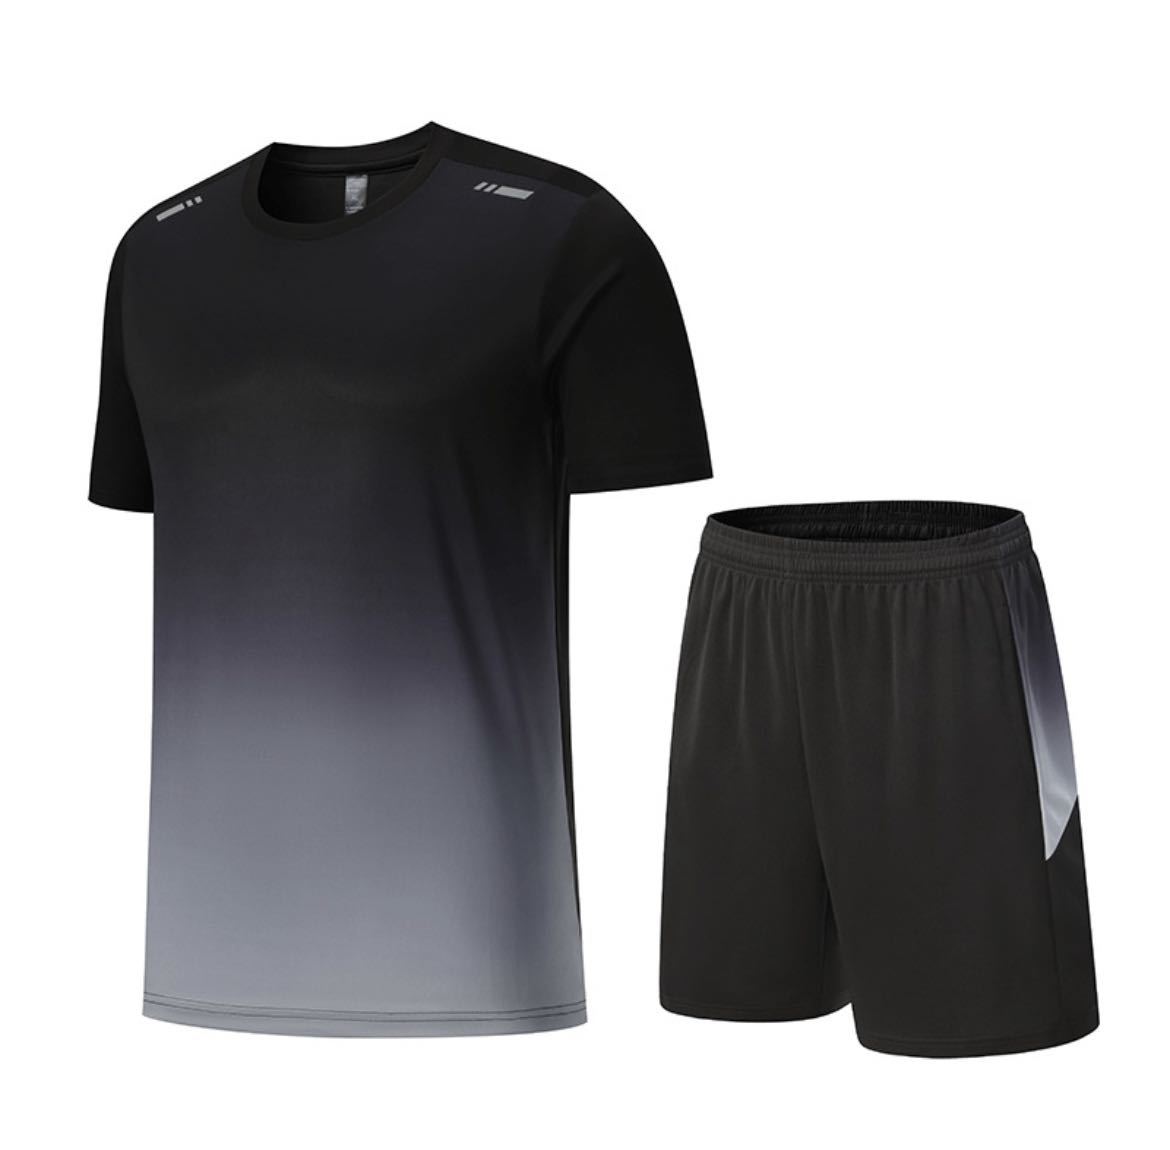 スポーツウェア メンズ 上下セット 半袖tシャツ ショートパンツ ランニングウェア トレーニングウェア カジュアル 薄手吸汗速乾 通気2XL黒